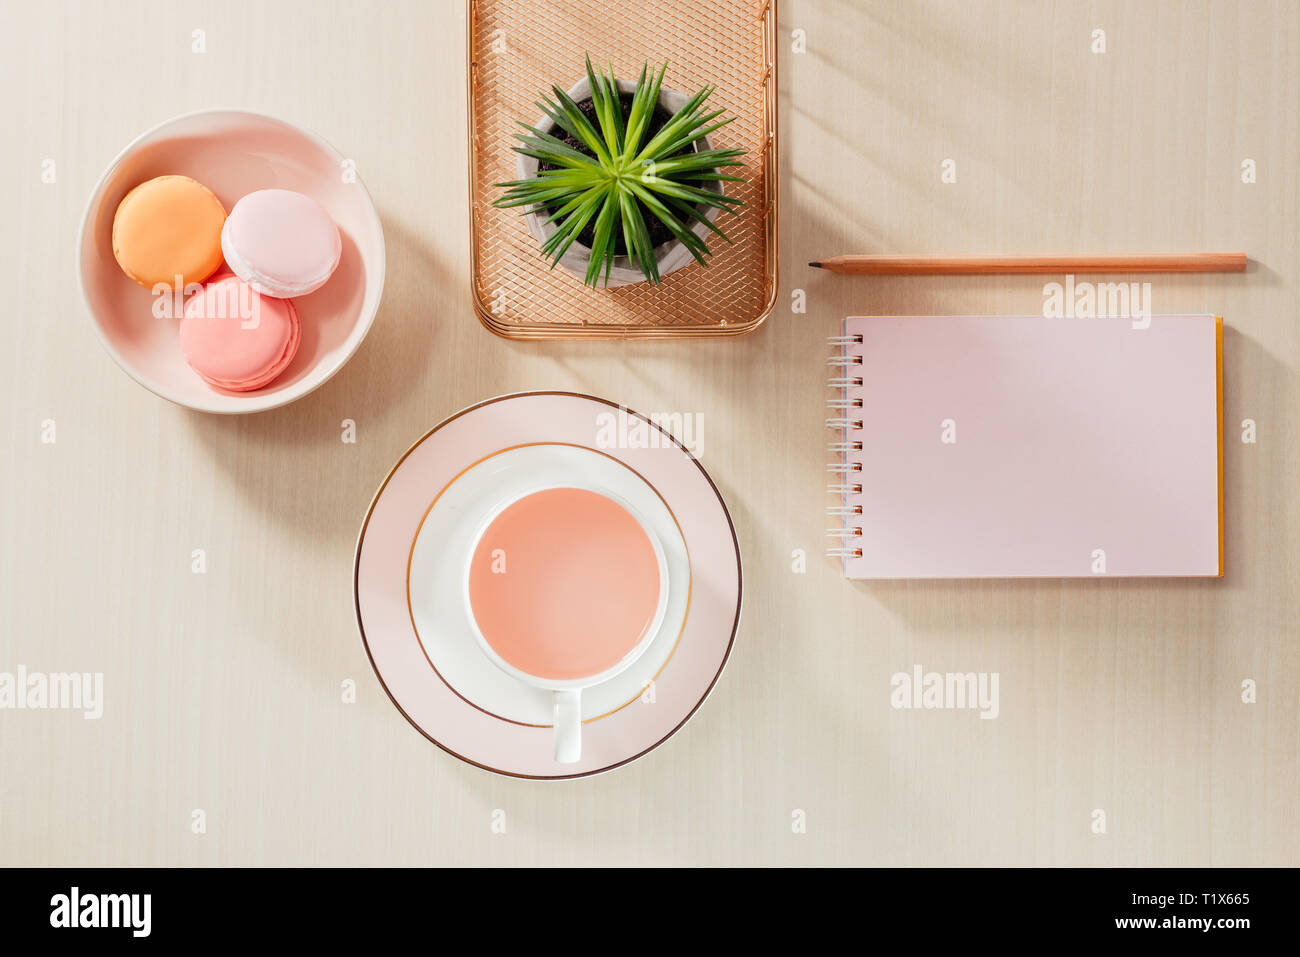 Nello stile di fotografia di stock ufficio beige scrivania con blank notebook, amaretti, forniture e tazza da caffè Foto Stock